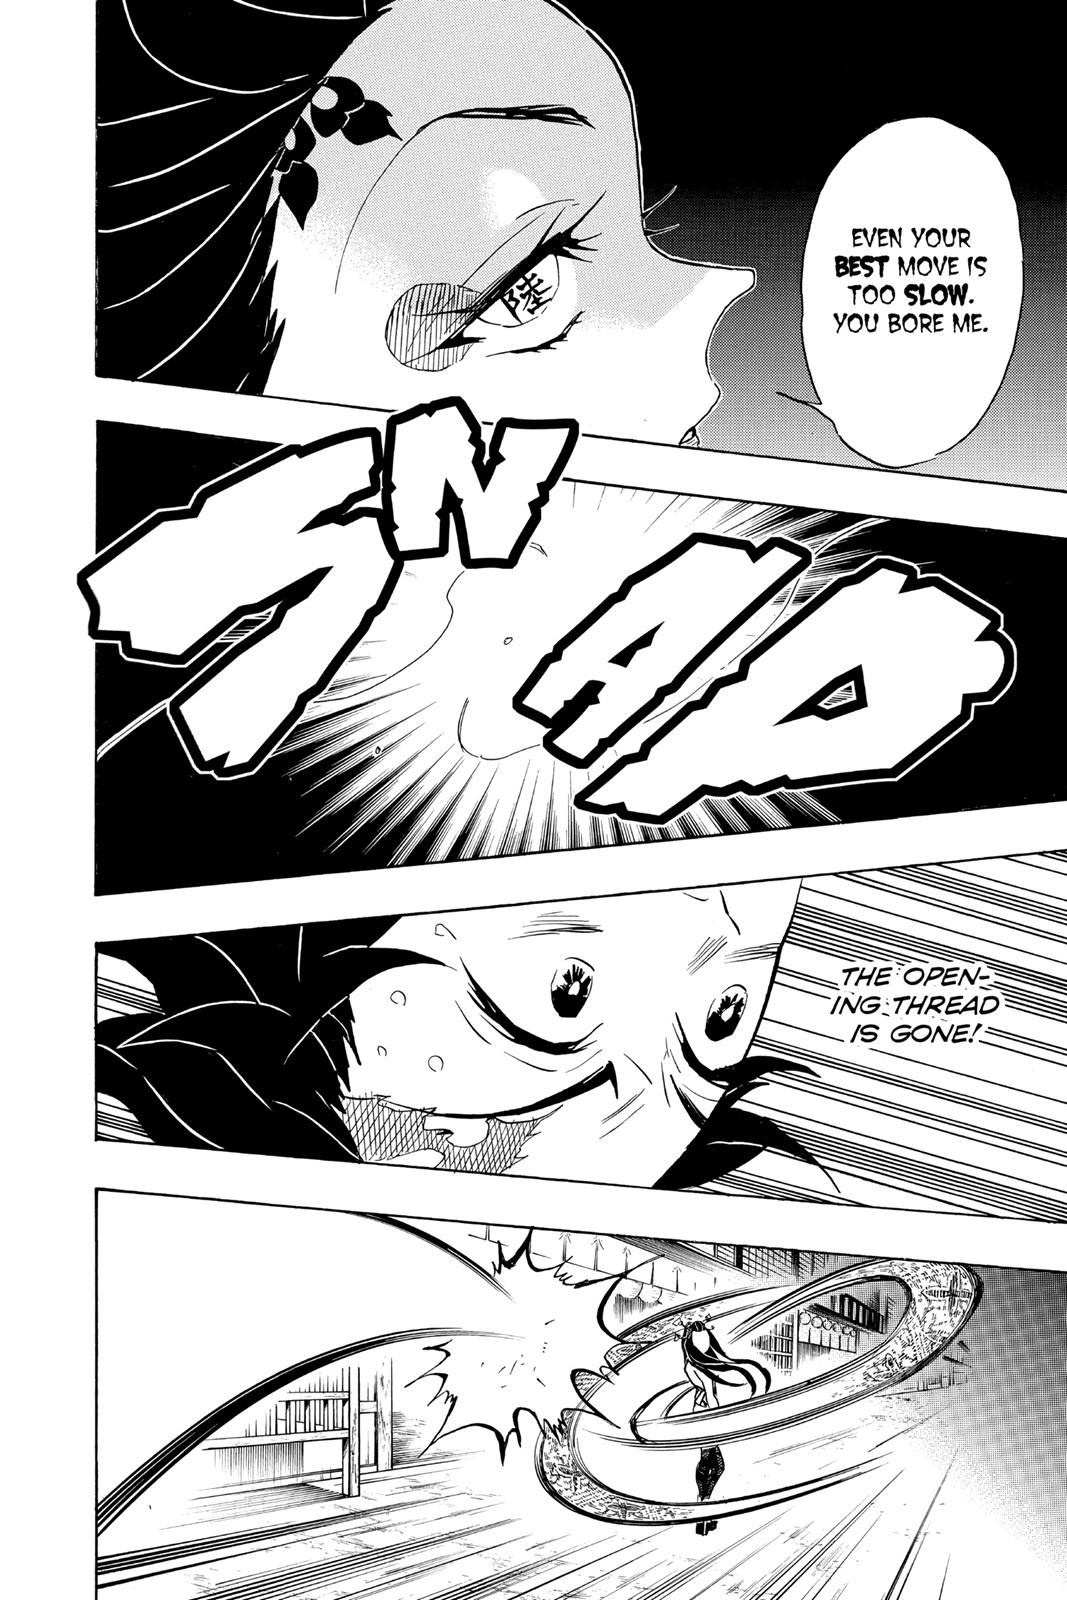 Demon Slayer Manga Manga Chapter - 78 - image 1